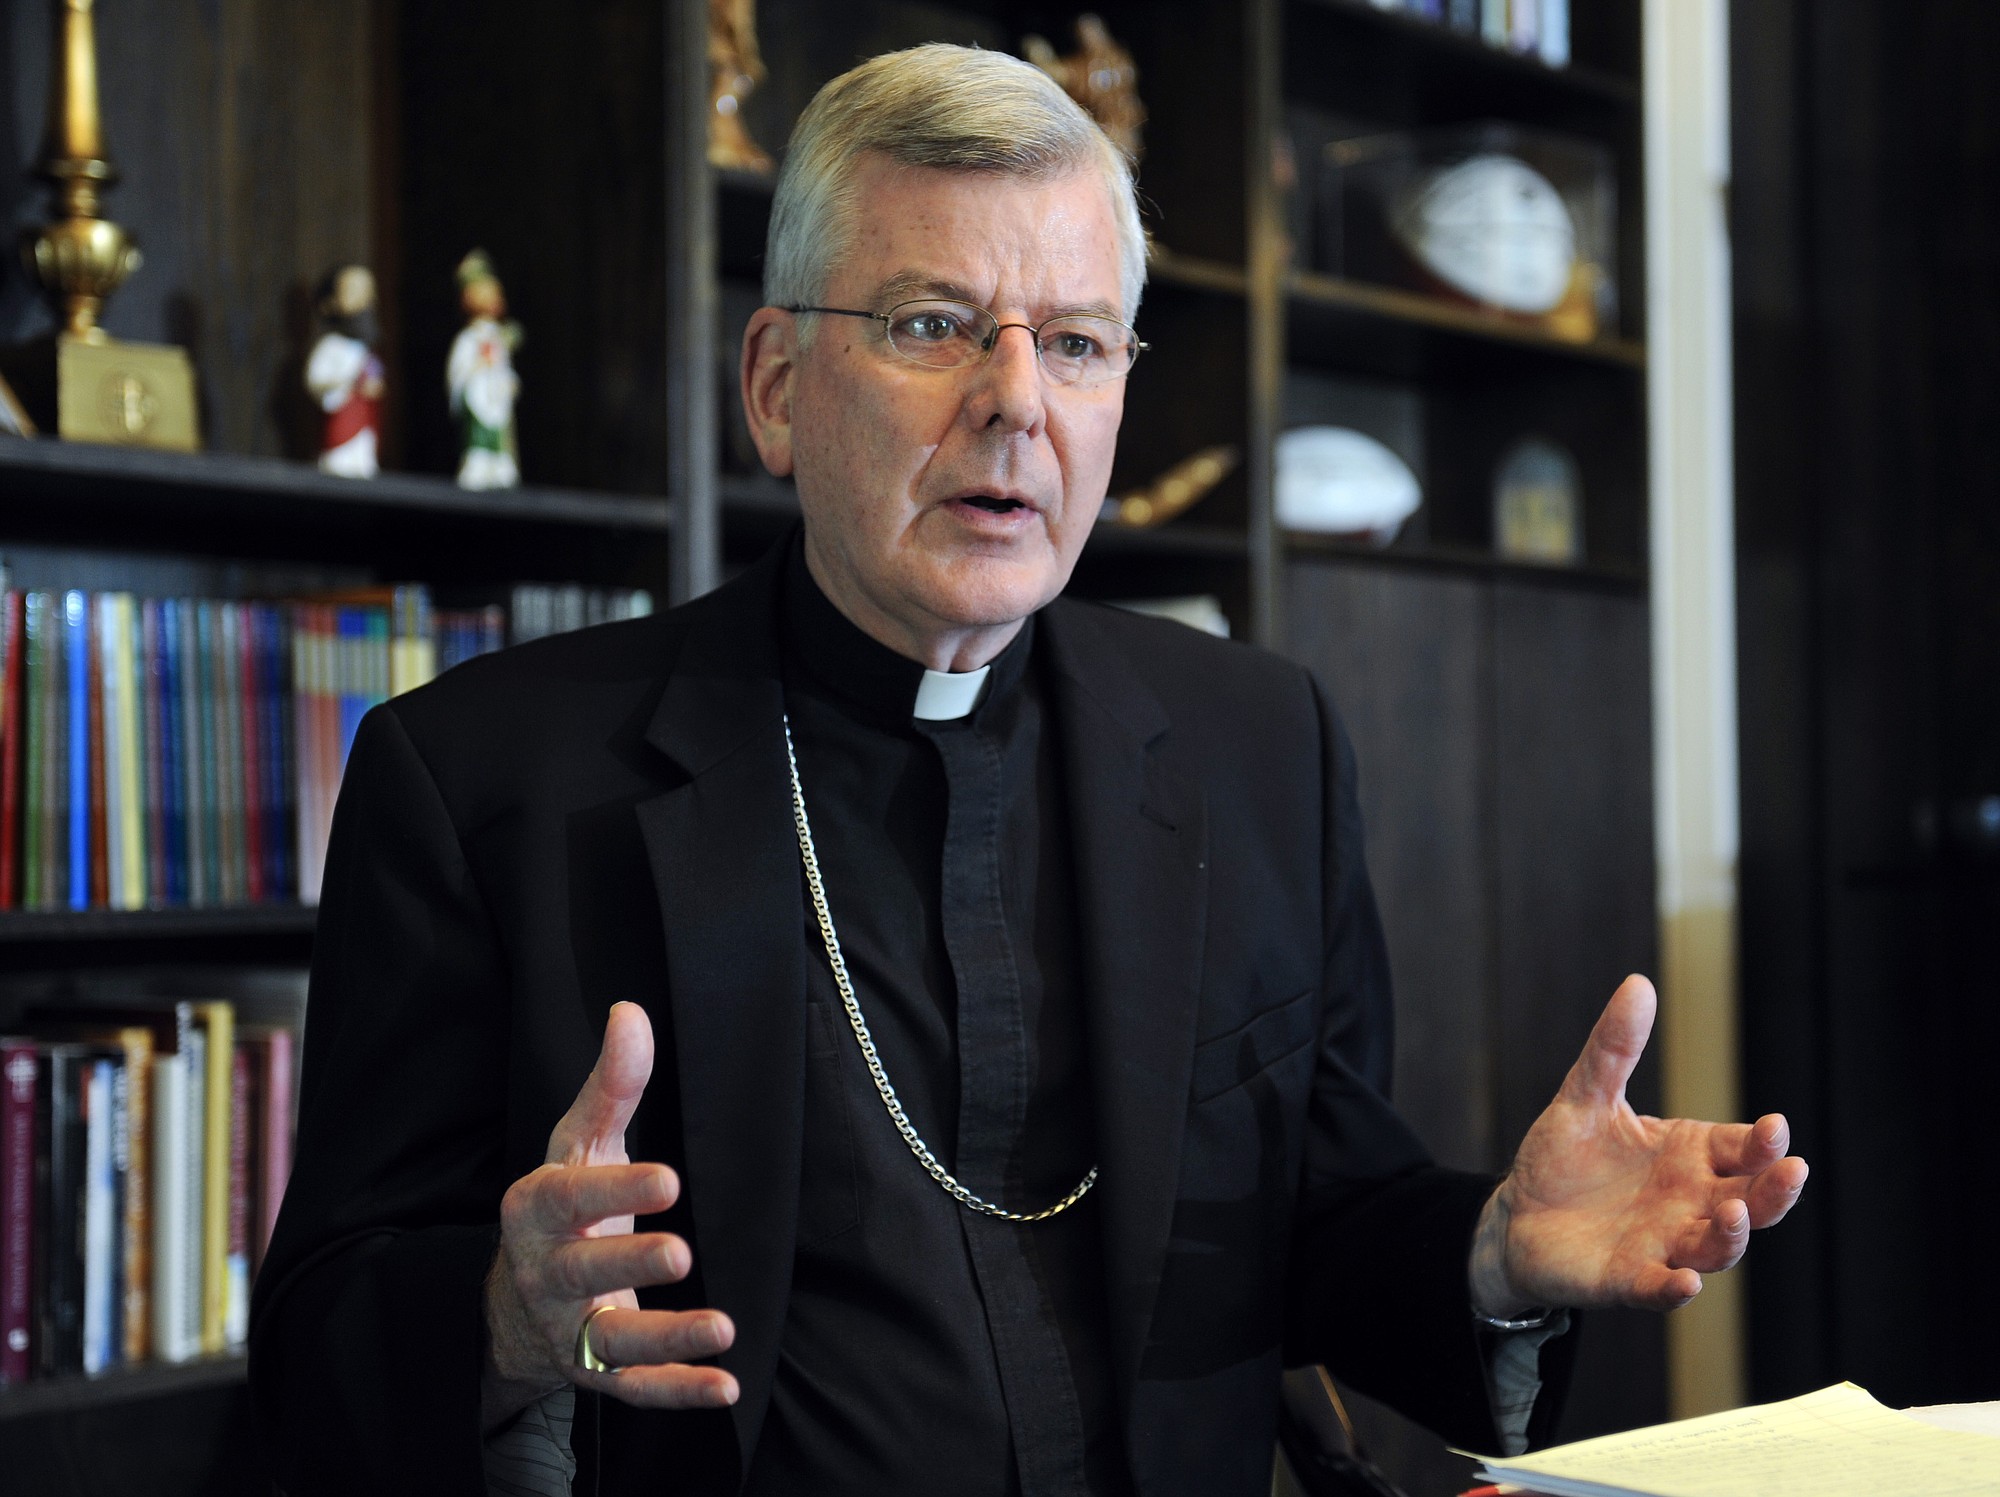 John Nienstedt
St. Paul-Minneapolis archbishop resigns